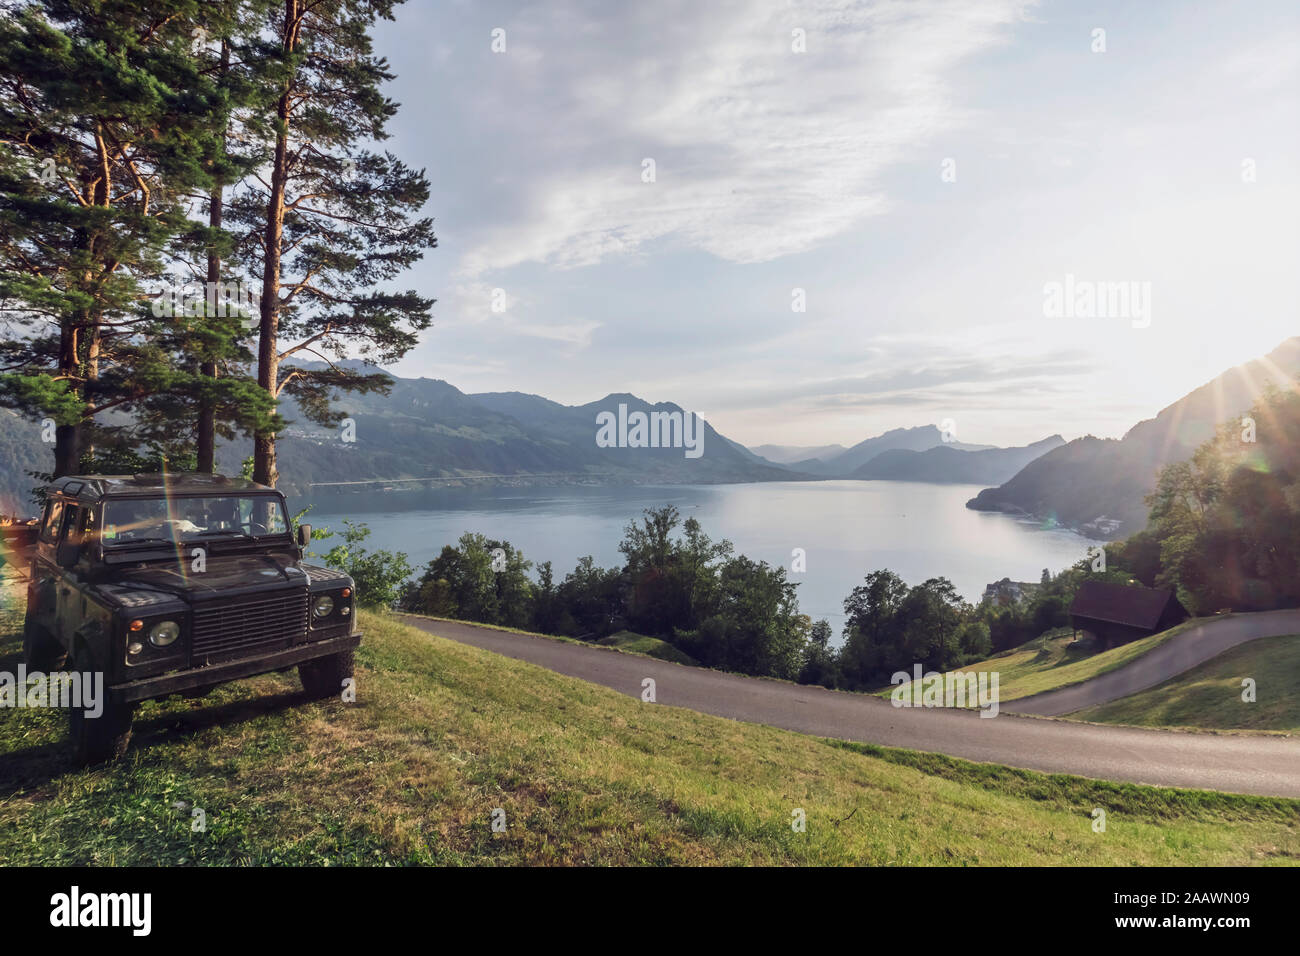 La Suisse, Lucerne, Schwyz, 4x4 voiture stationnée le long de la route sinueuse avec Lac de Lucerne en arrière-plan Banque D'Images